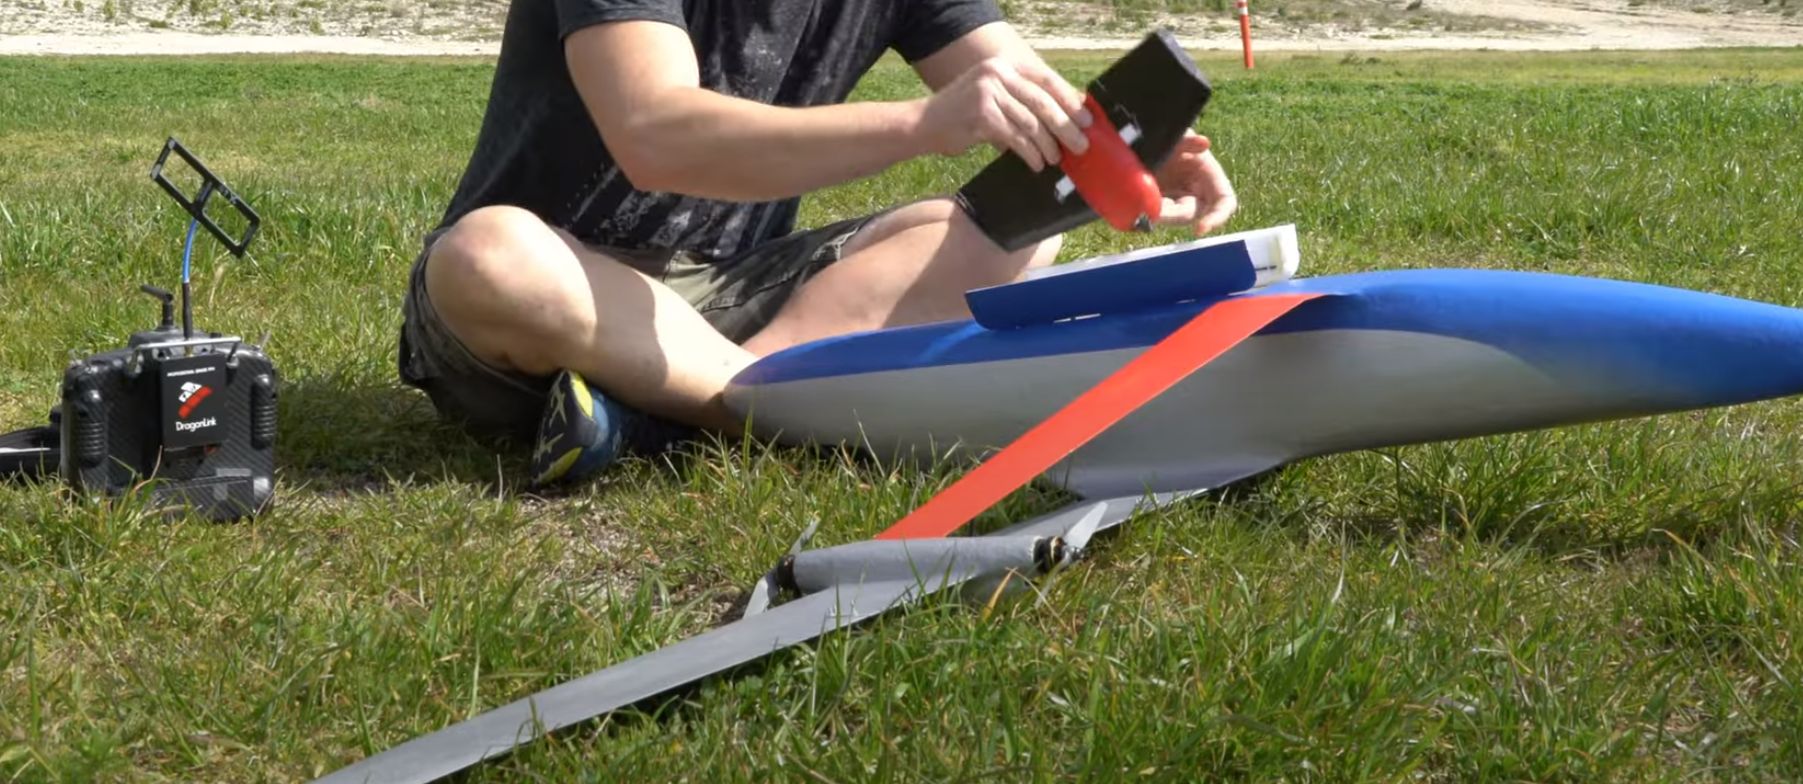 ギア ストラットを備えたモデル航空機の構築: センスかナンセンスか?